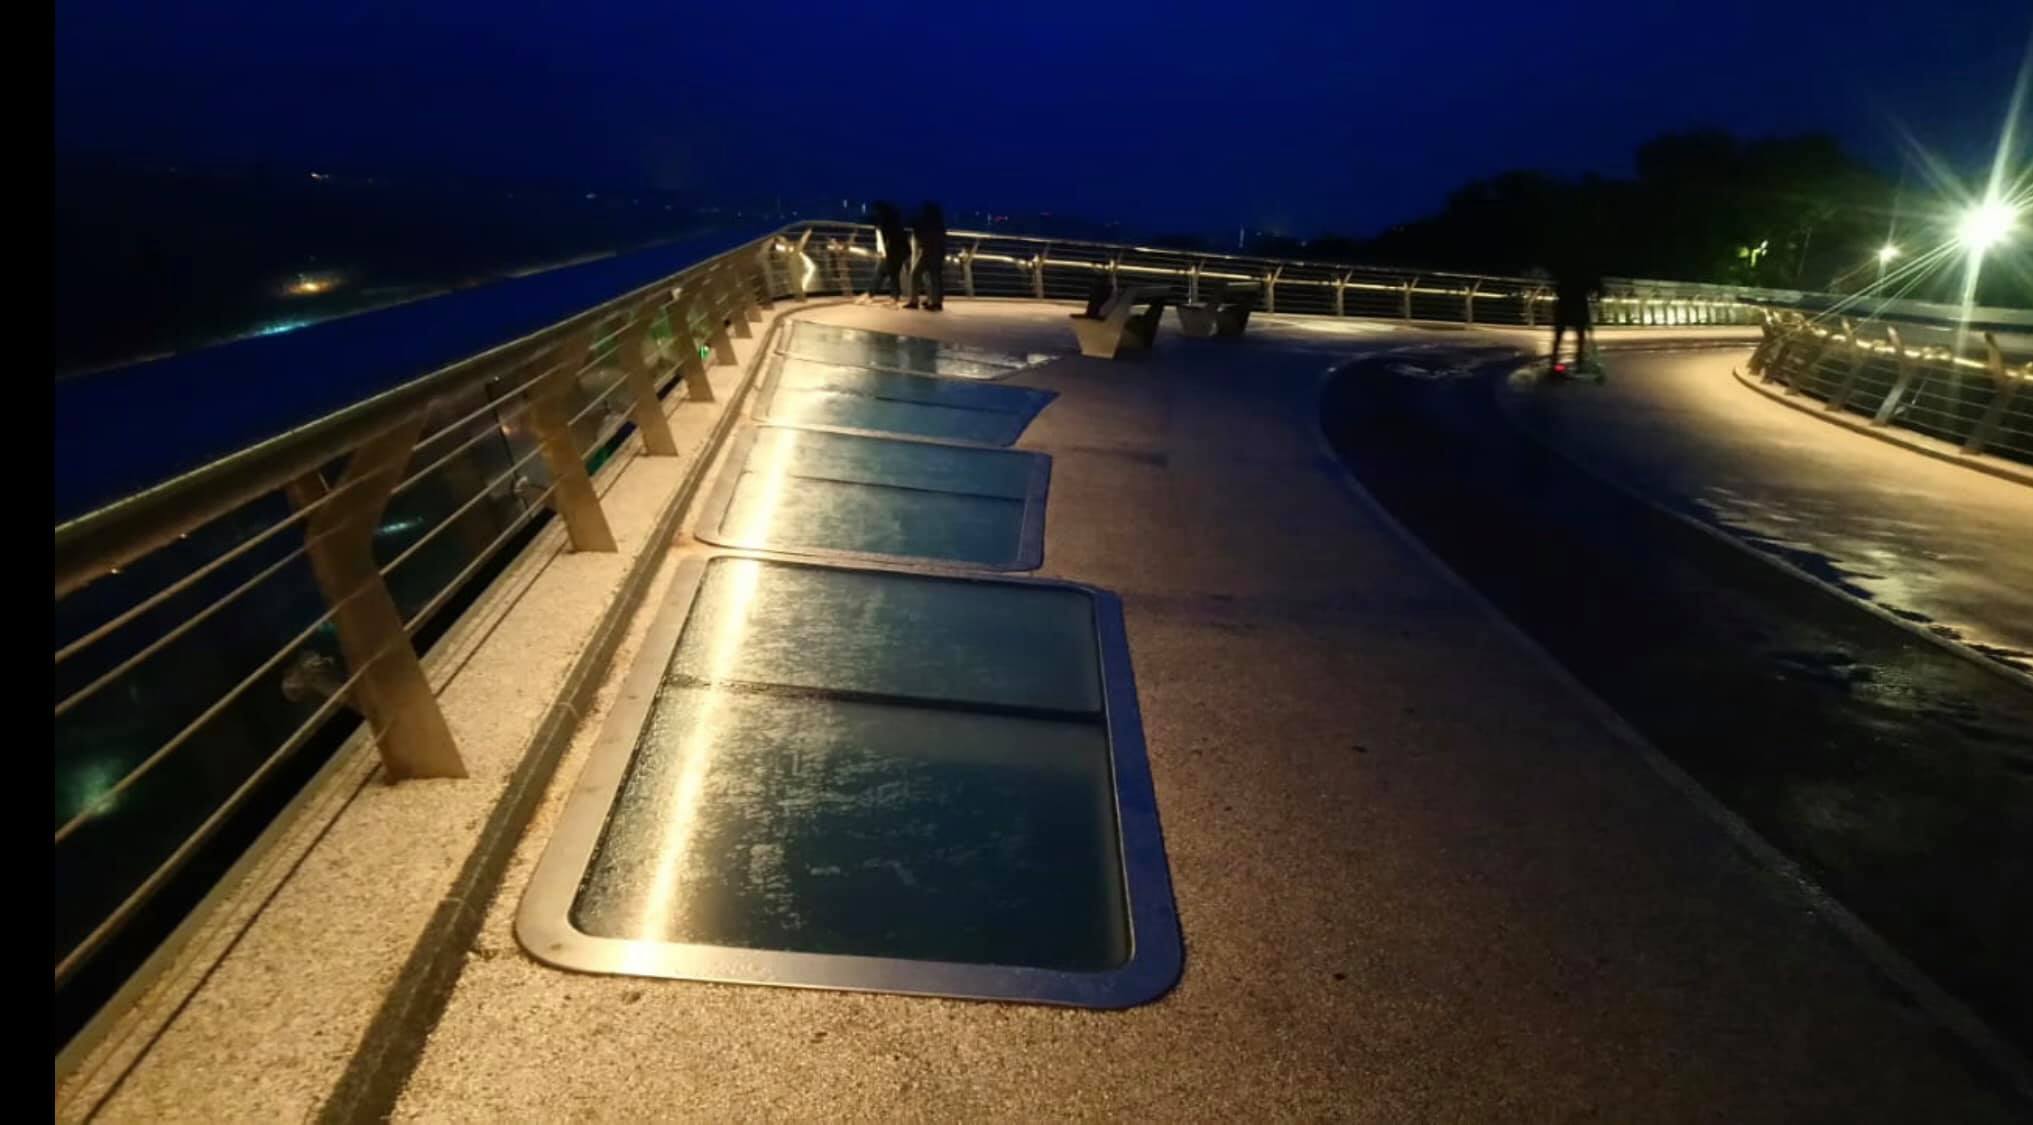 В Киеве открыли мост на Владимирской горке: на нем снова заменили стекло – фото